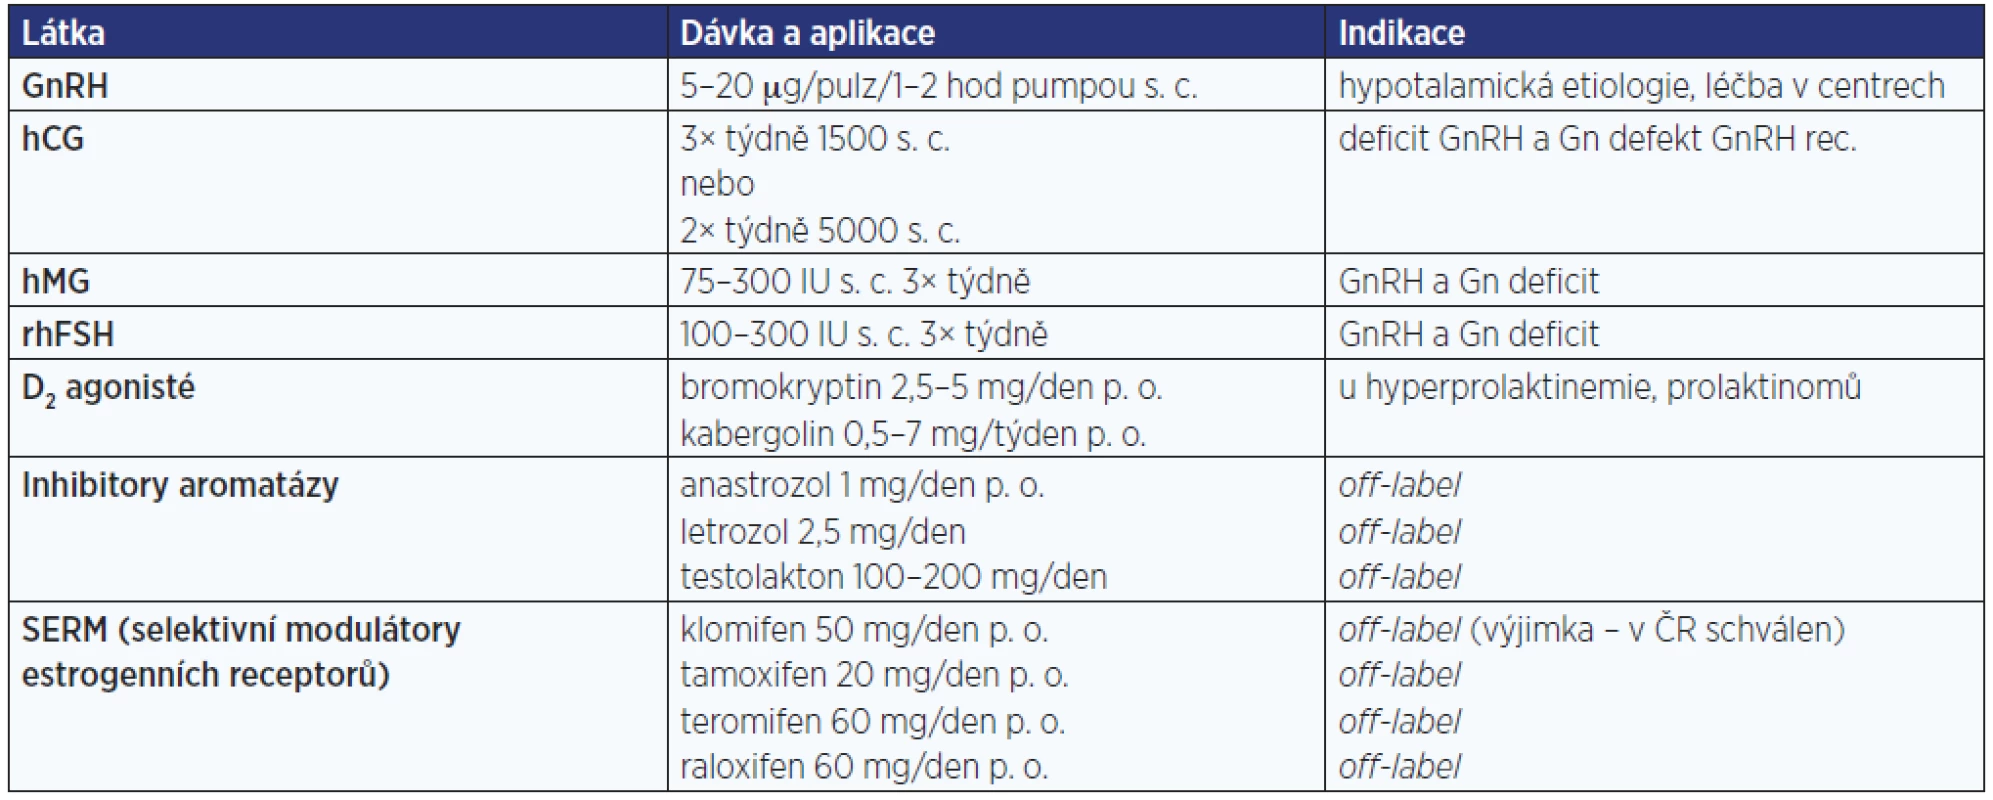 Farmakologická léčba infertility (některé dávky modifikovány na podmínky v ČR)